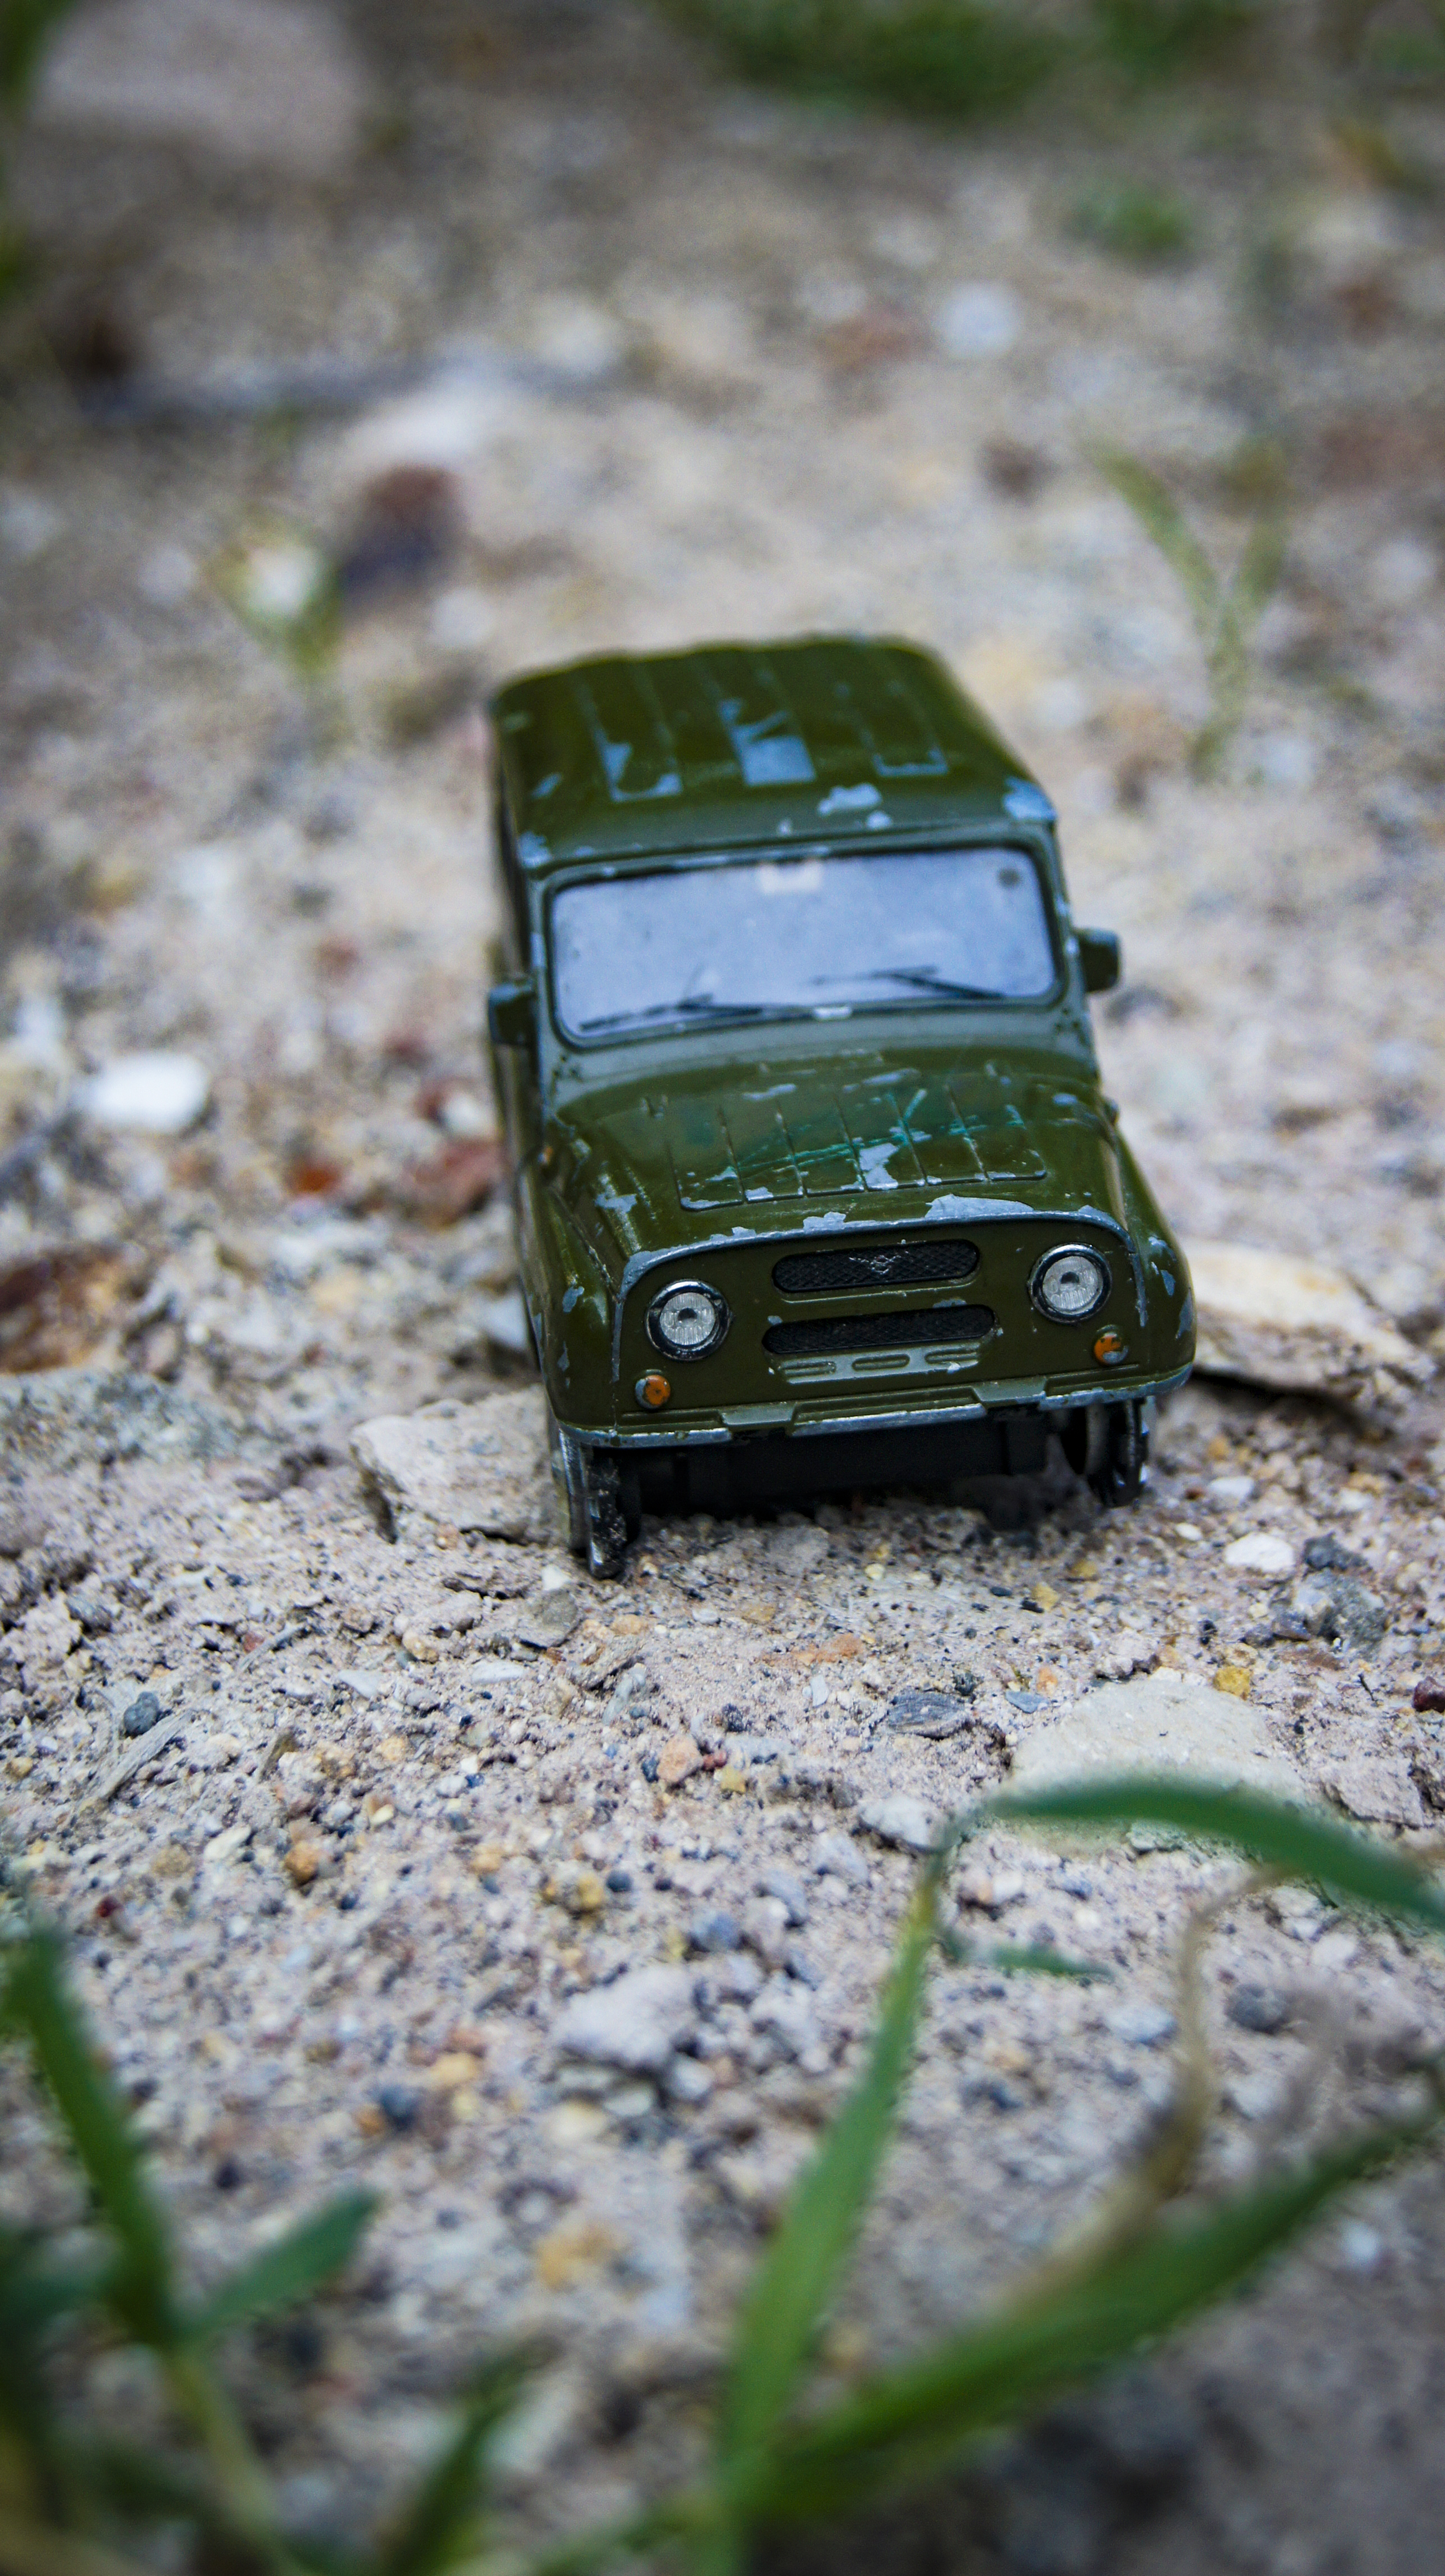 Машина.УАЗ.Зеленый.Игрушка.Машинка на песке.